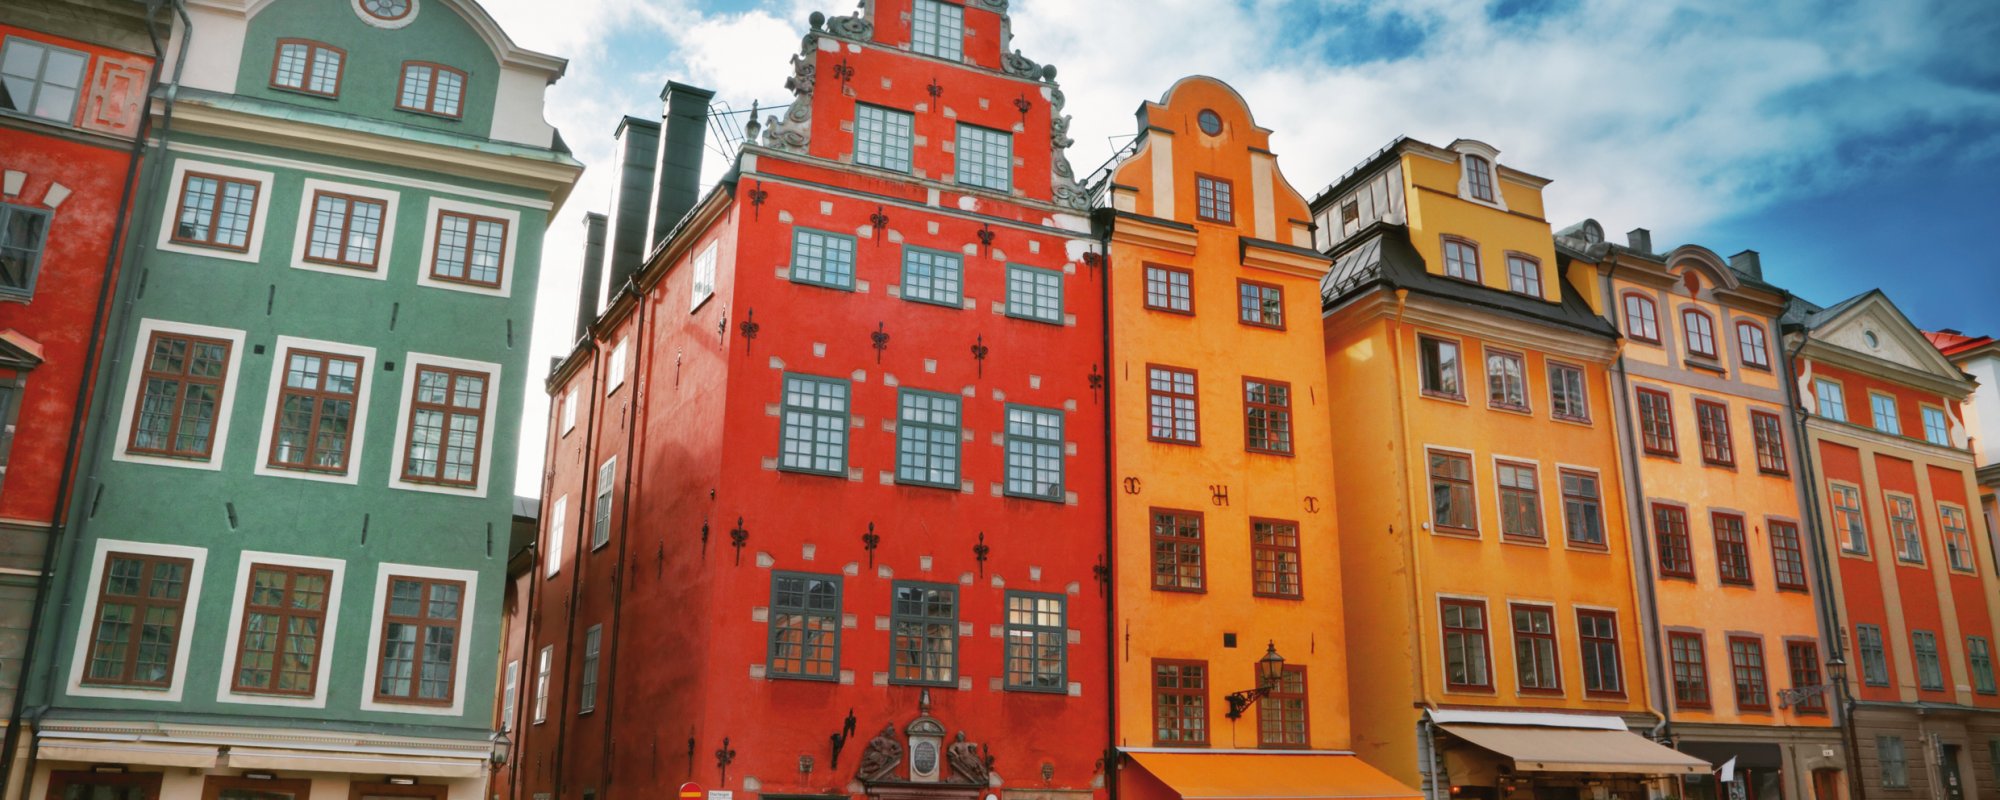 Stockholms Altstadt Gamla Stan